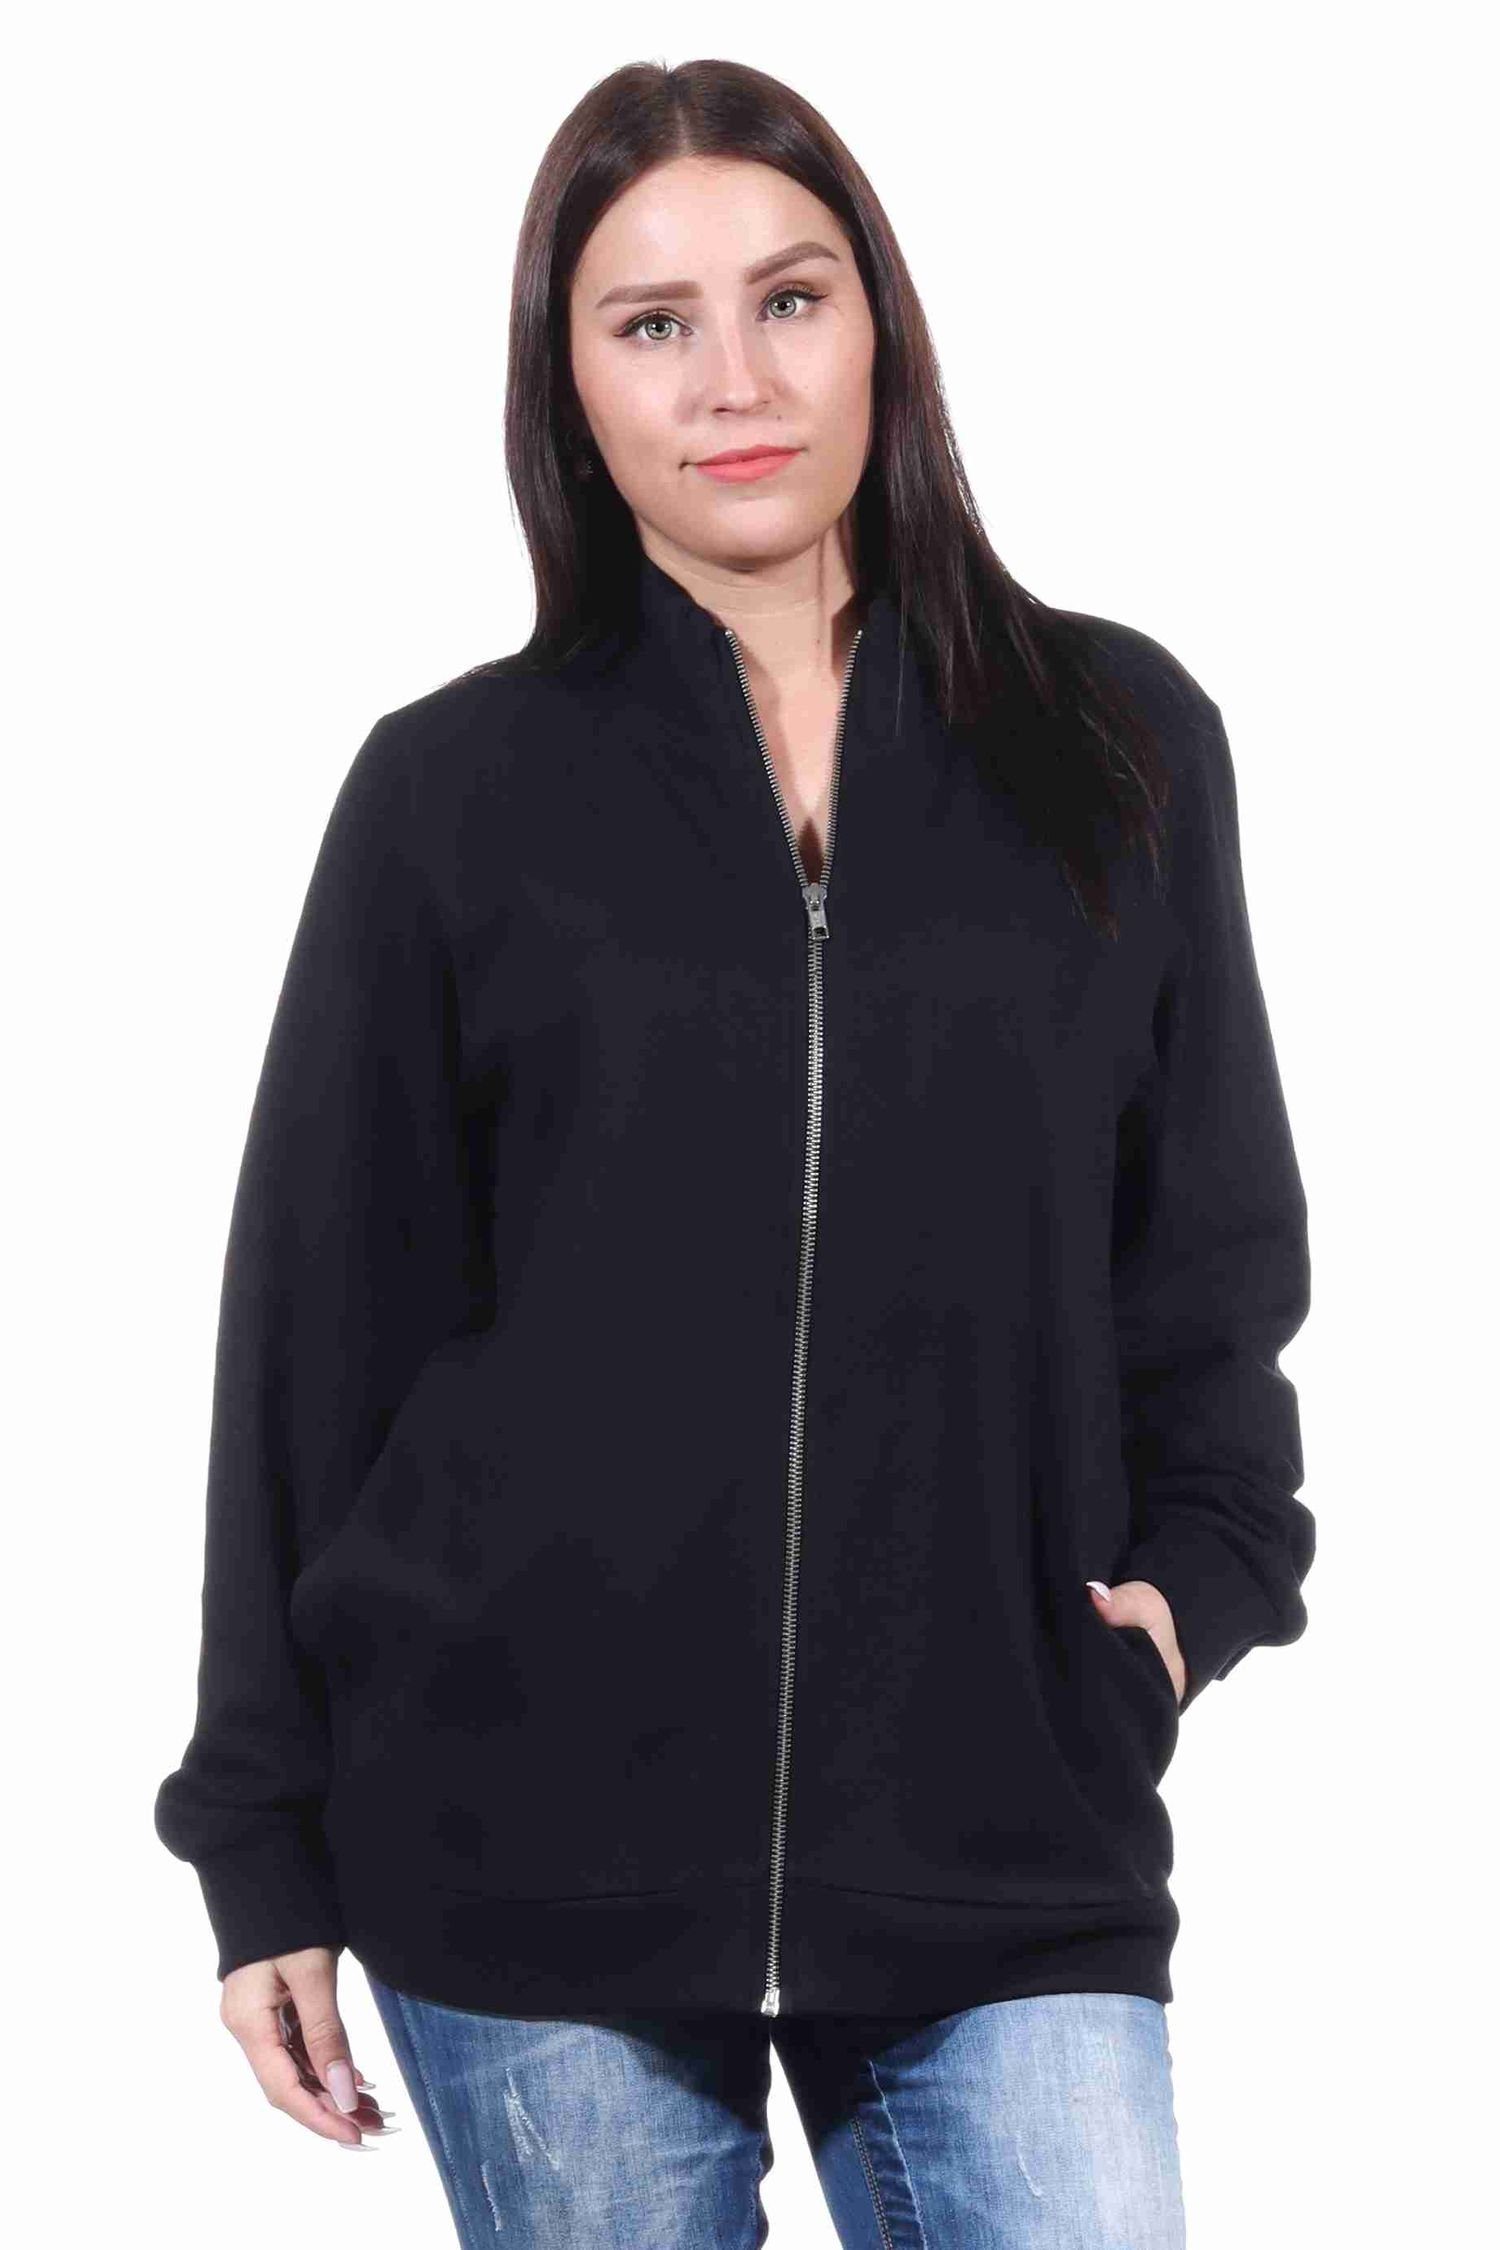 Normann Relaxanzug Damen Jacke für Hausanzug, Sportanzug oder Jogginanzug Oberteil schwarz | Hausanzüge